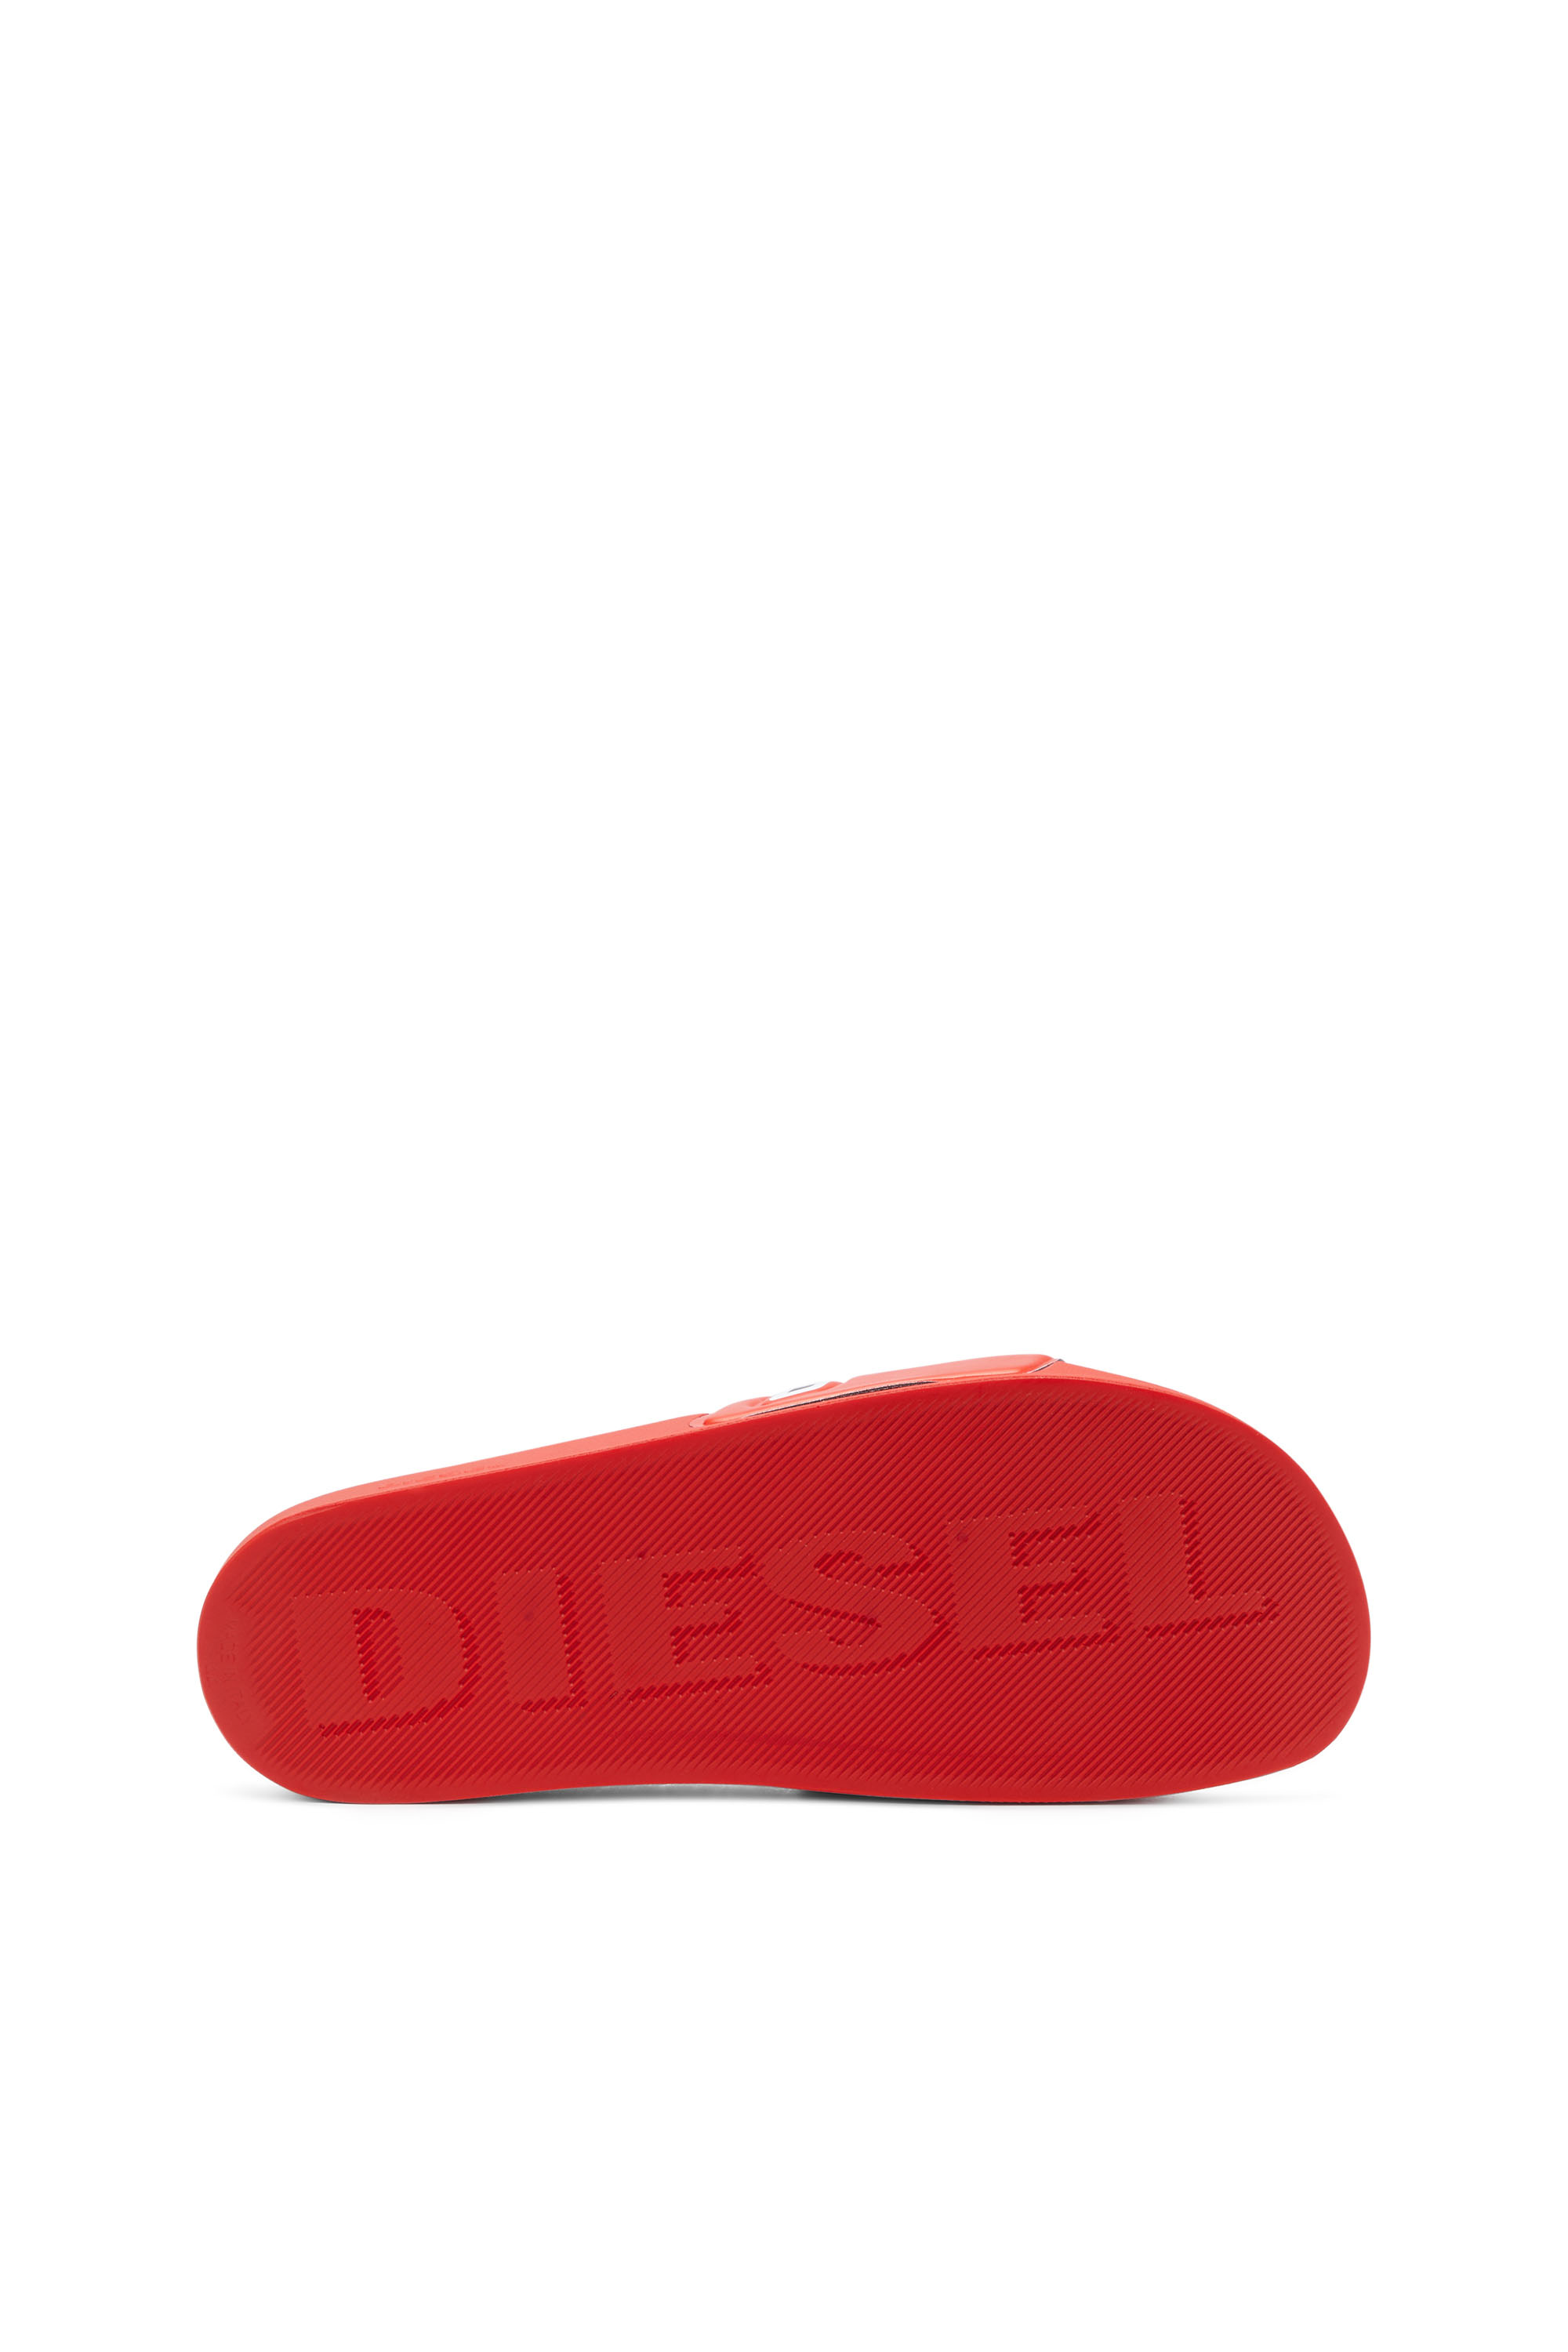 Diesel - SA-MAYEMI D, Homme Sa-Mayemi-Claquettes de piscine avec logo D intégré in Polychrome - Image 4